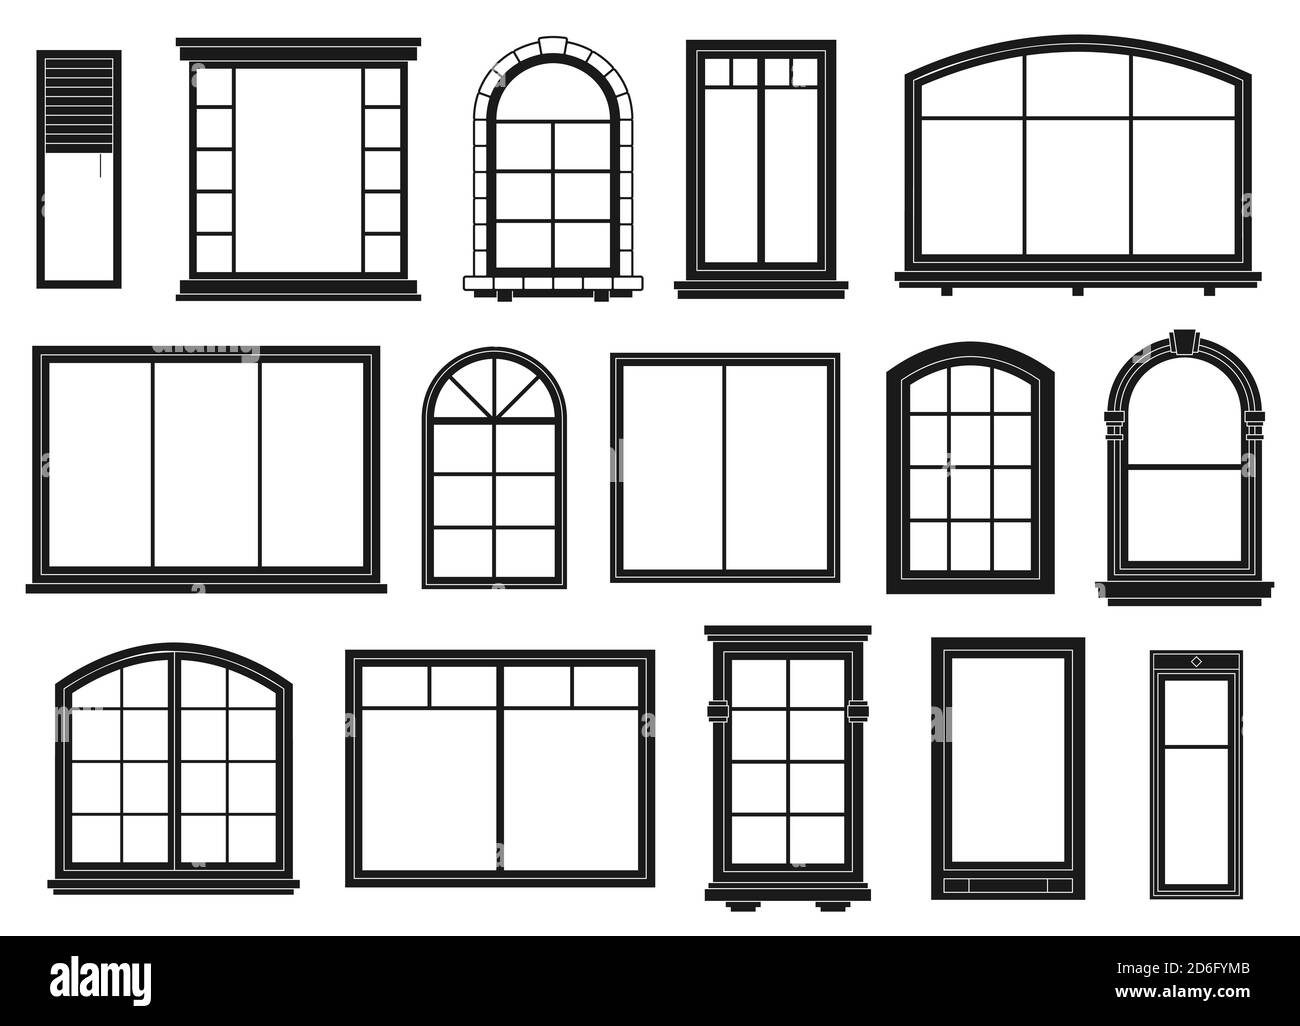 Fenstersilhouetten. Außenrahmen Fenster, schwarze Umrisse verzierten Bögen und Türen architektonischen Elemente, isoliert Vektor-Set Stock Vektor